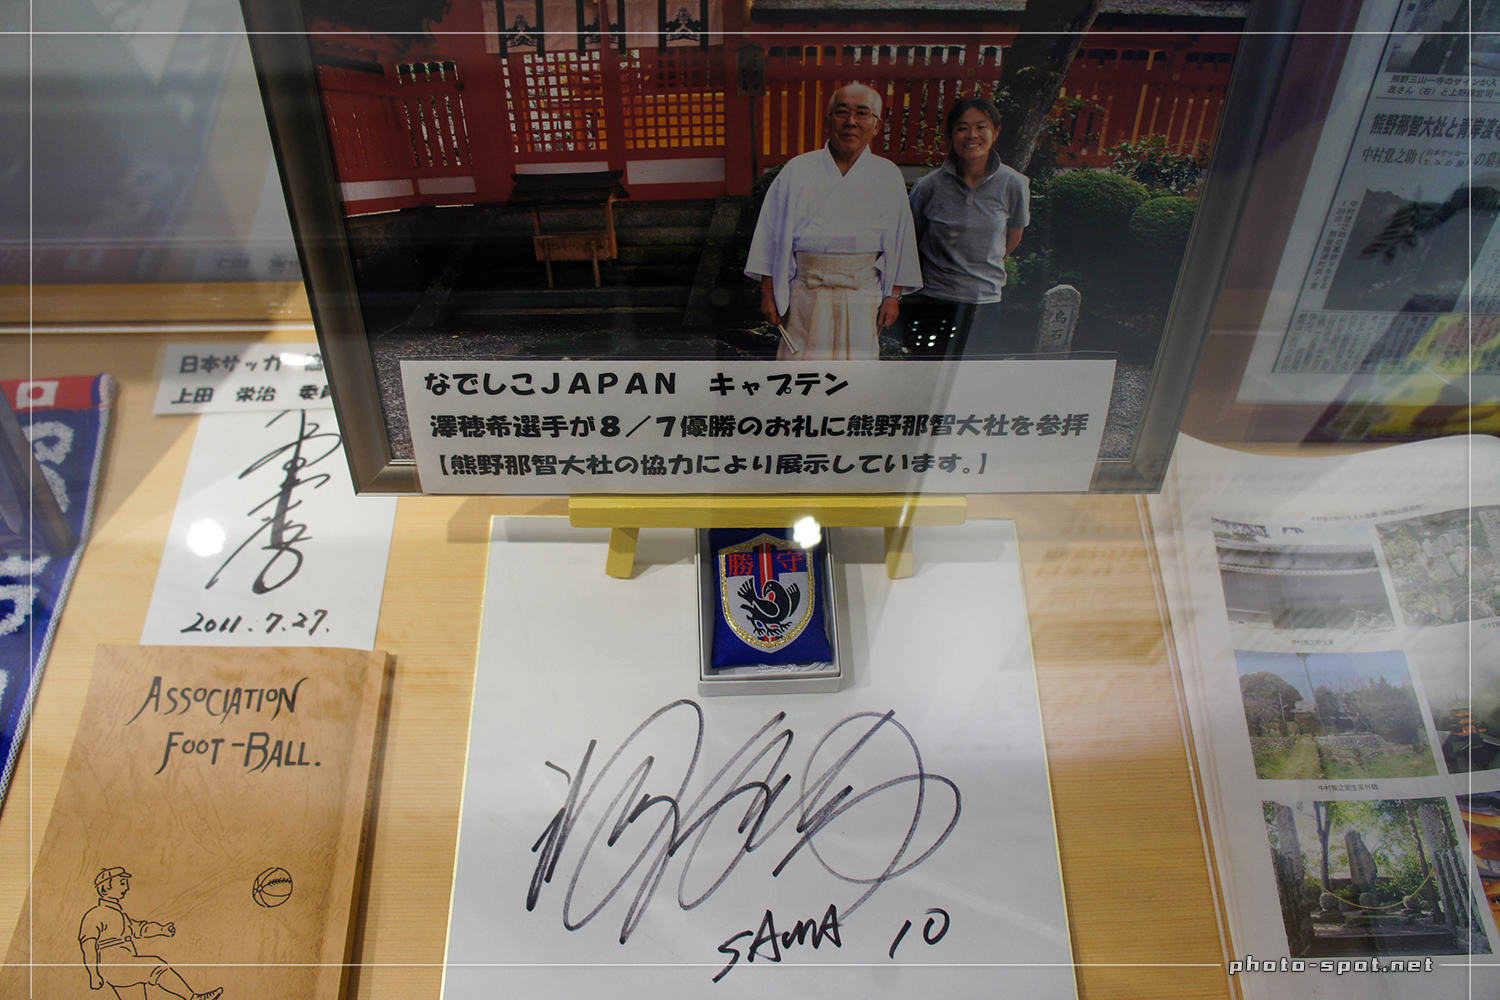 那智駅交流センター飾られていた、なでしこJAPANキャプテンの澤穂希選手のサイン